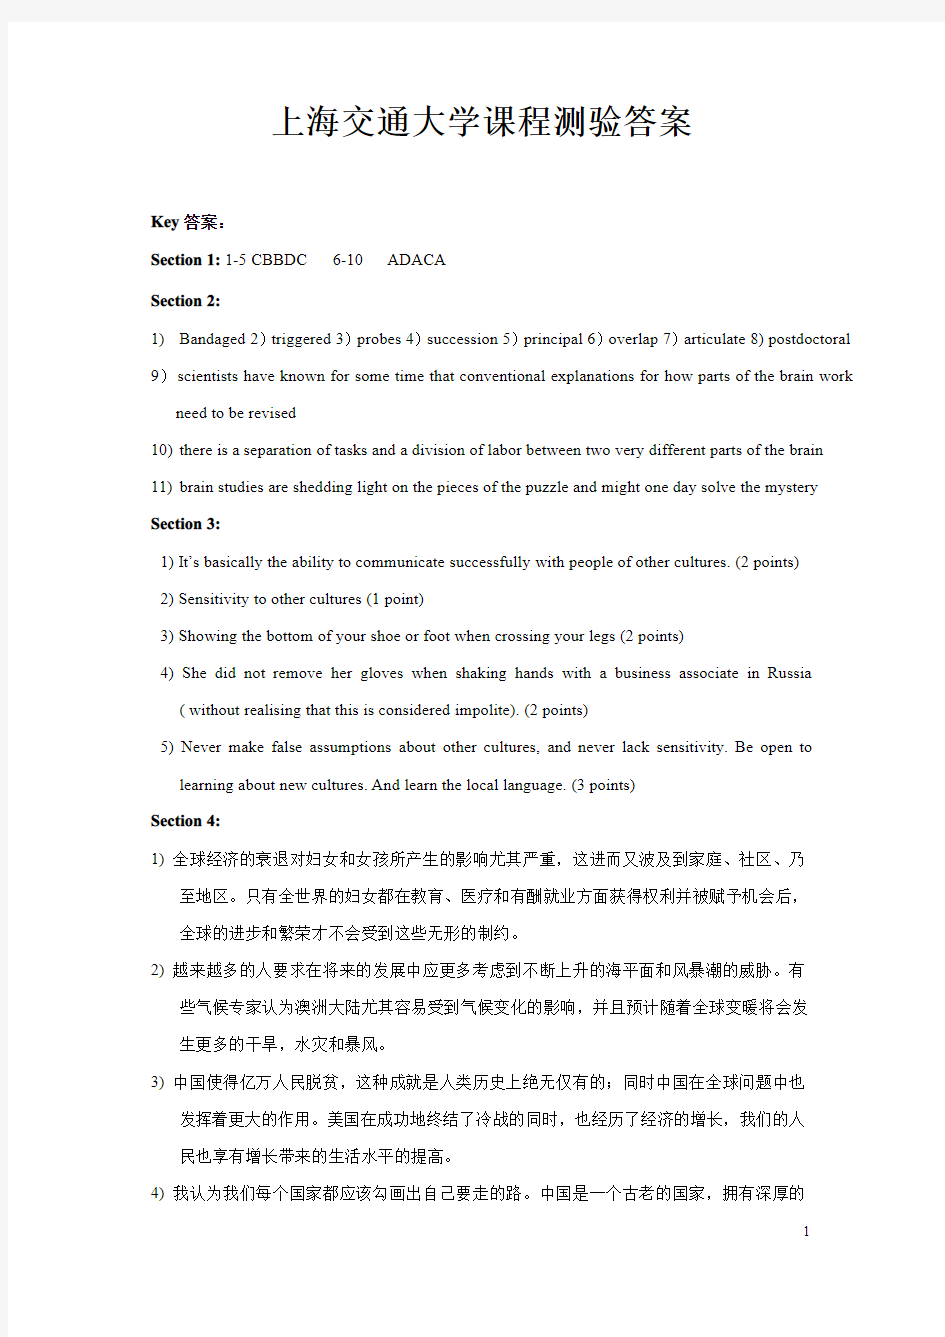 上海交通大学课程测验答案